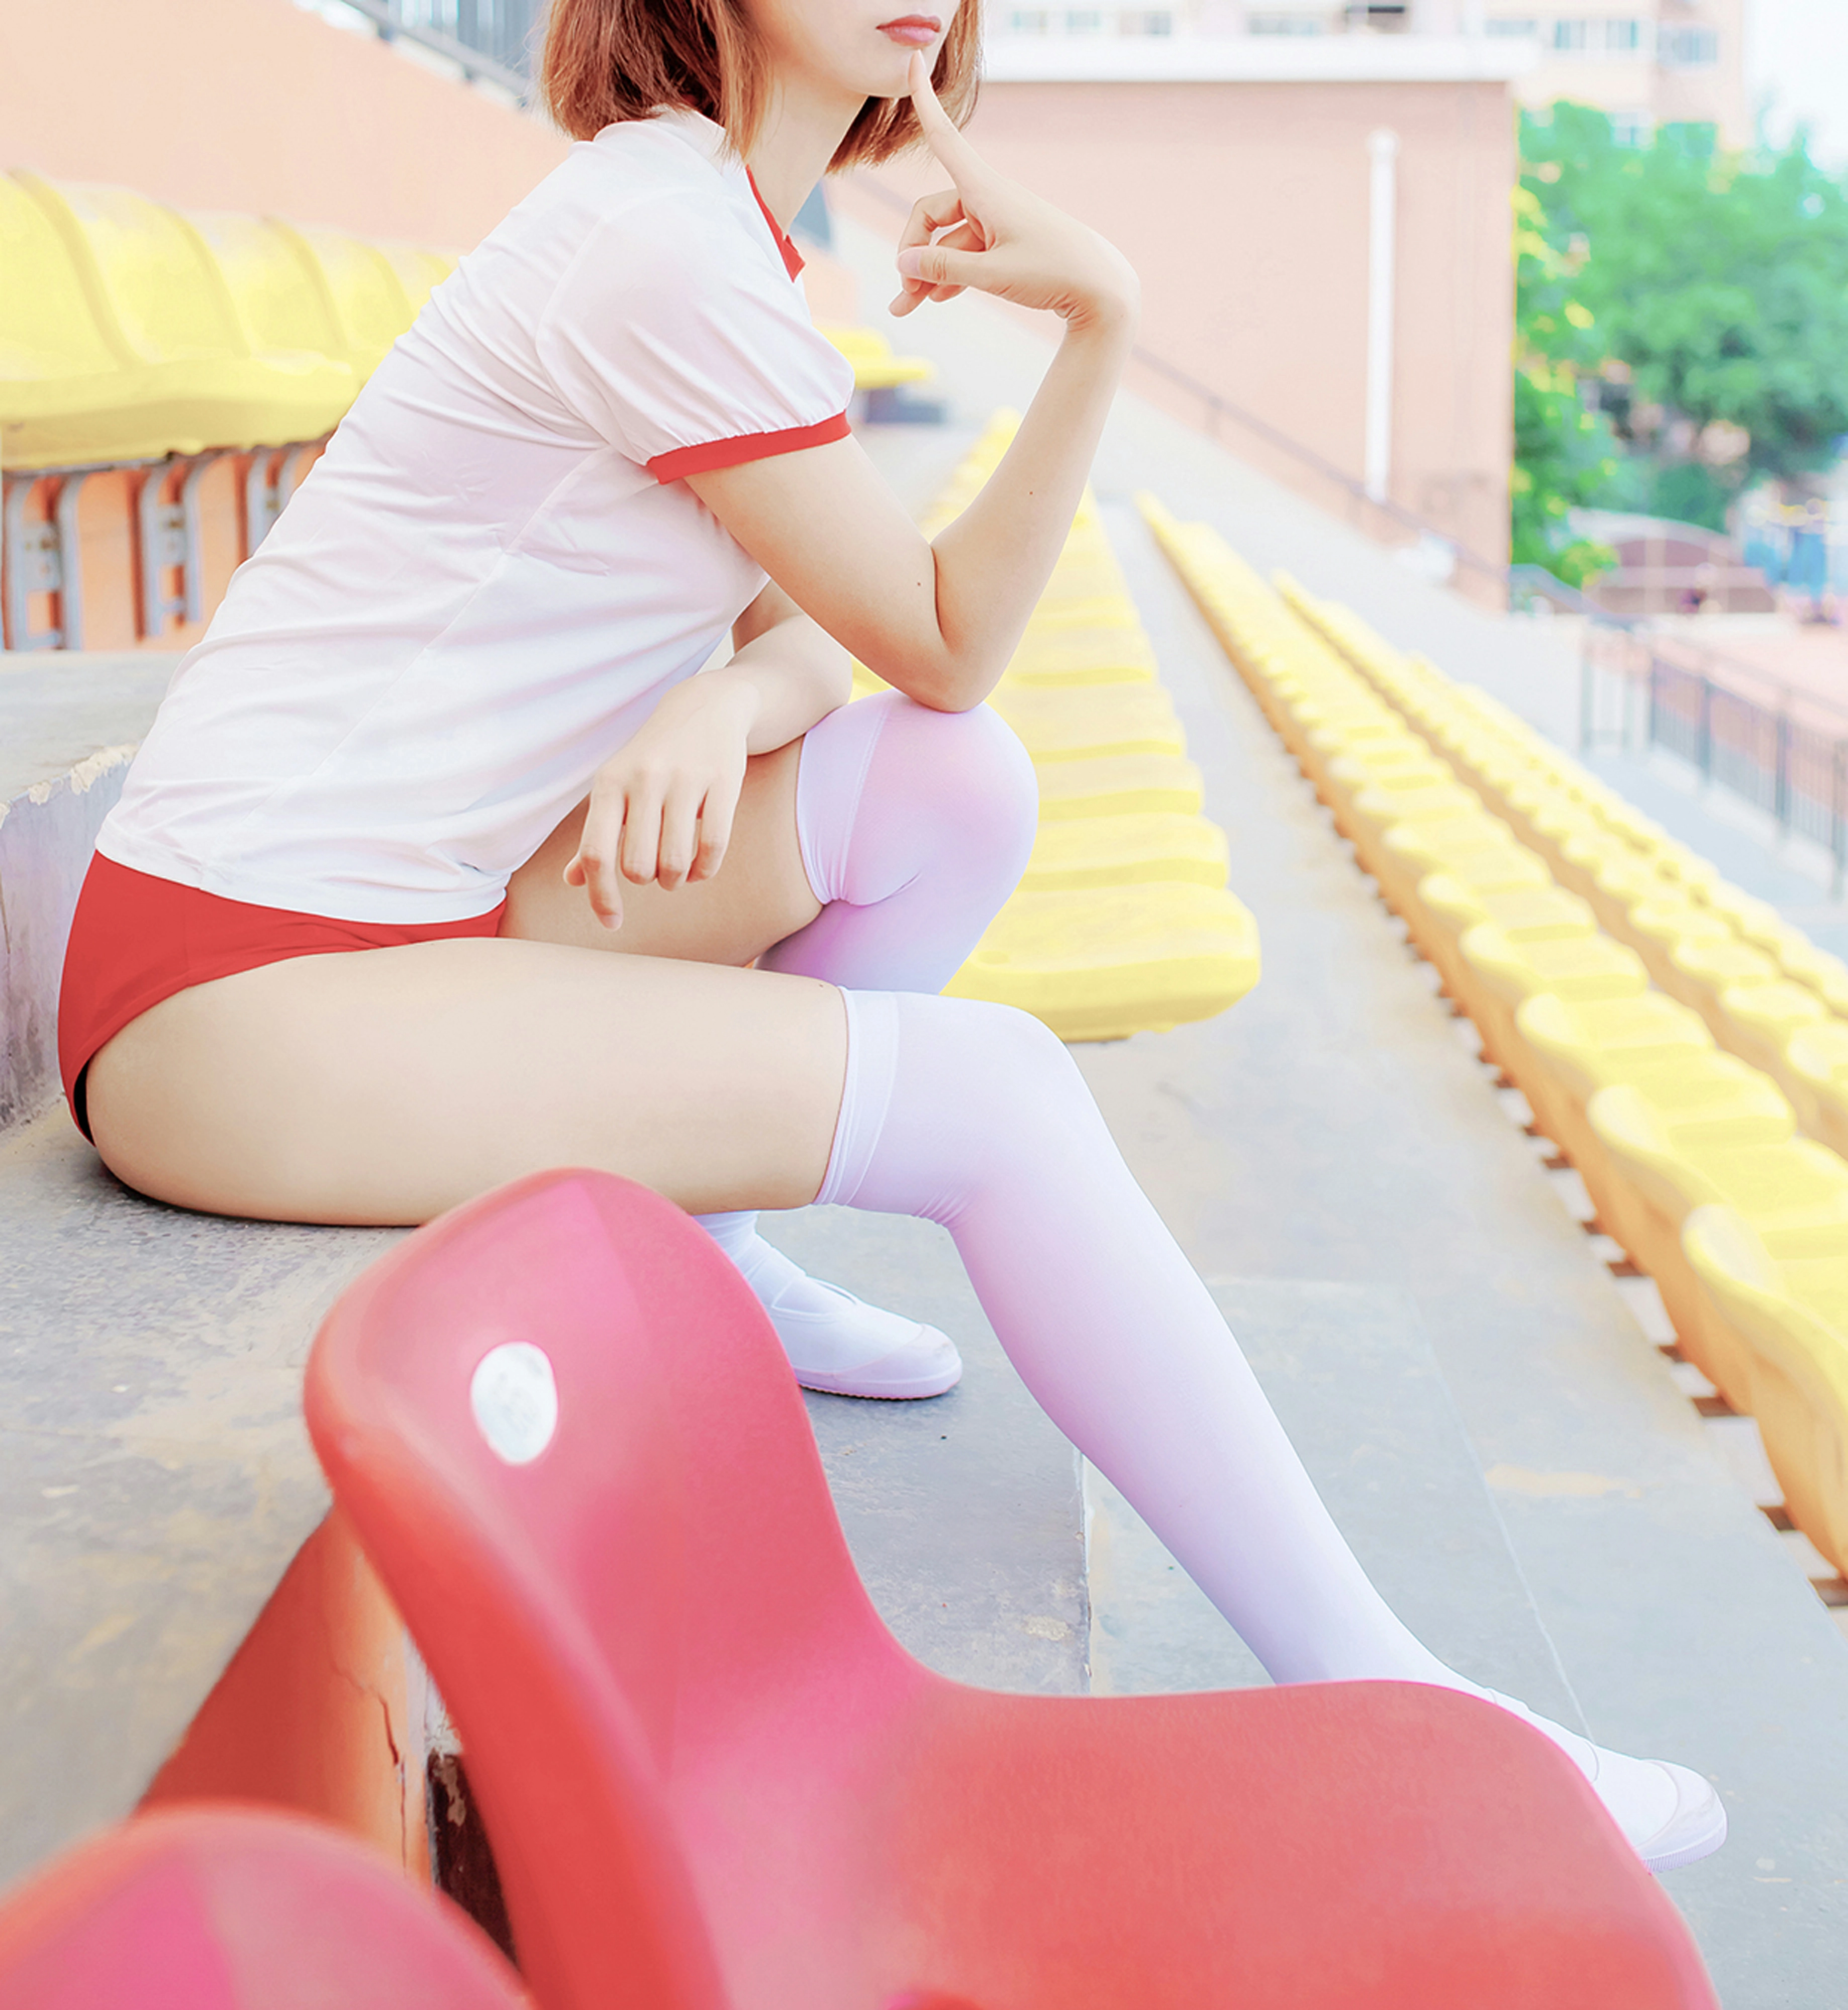 [风之领域]NO.142 体育场上的少女 白色短袖与红色安全短裤加白色丝袜美腿性感私房写真集,